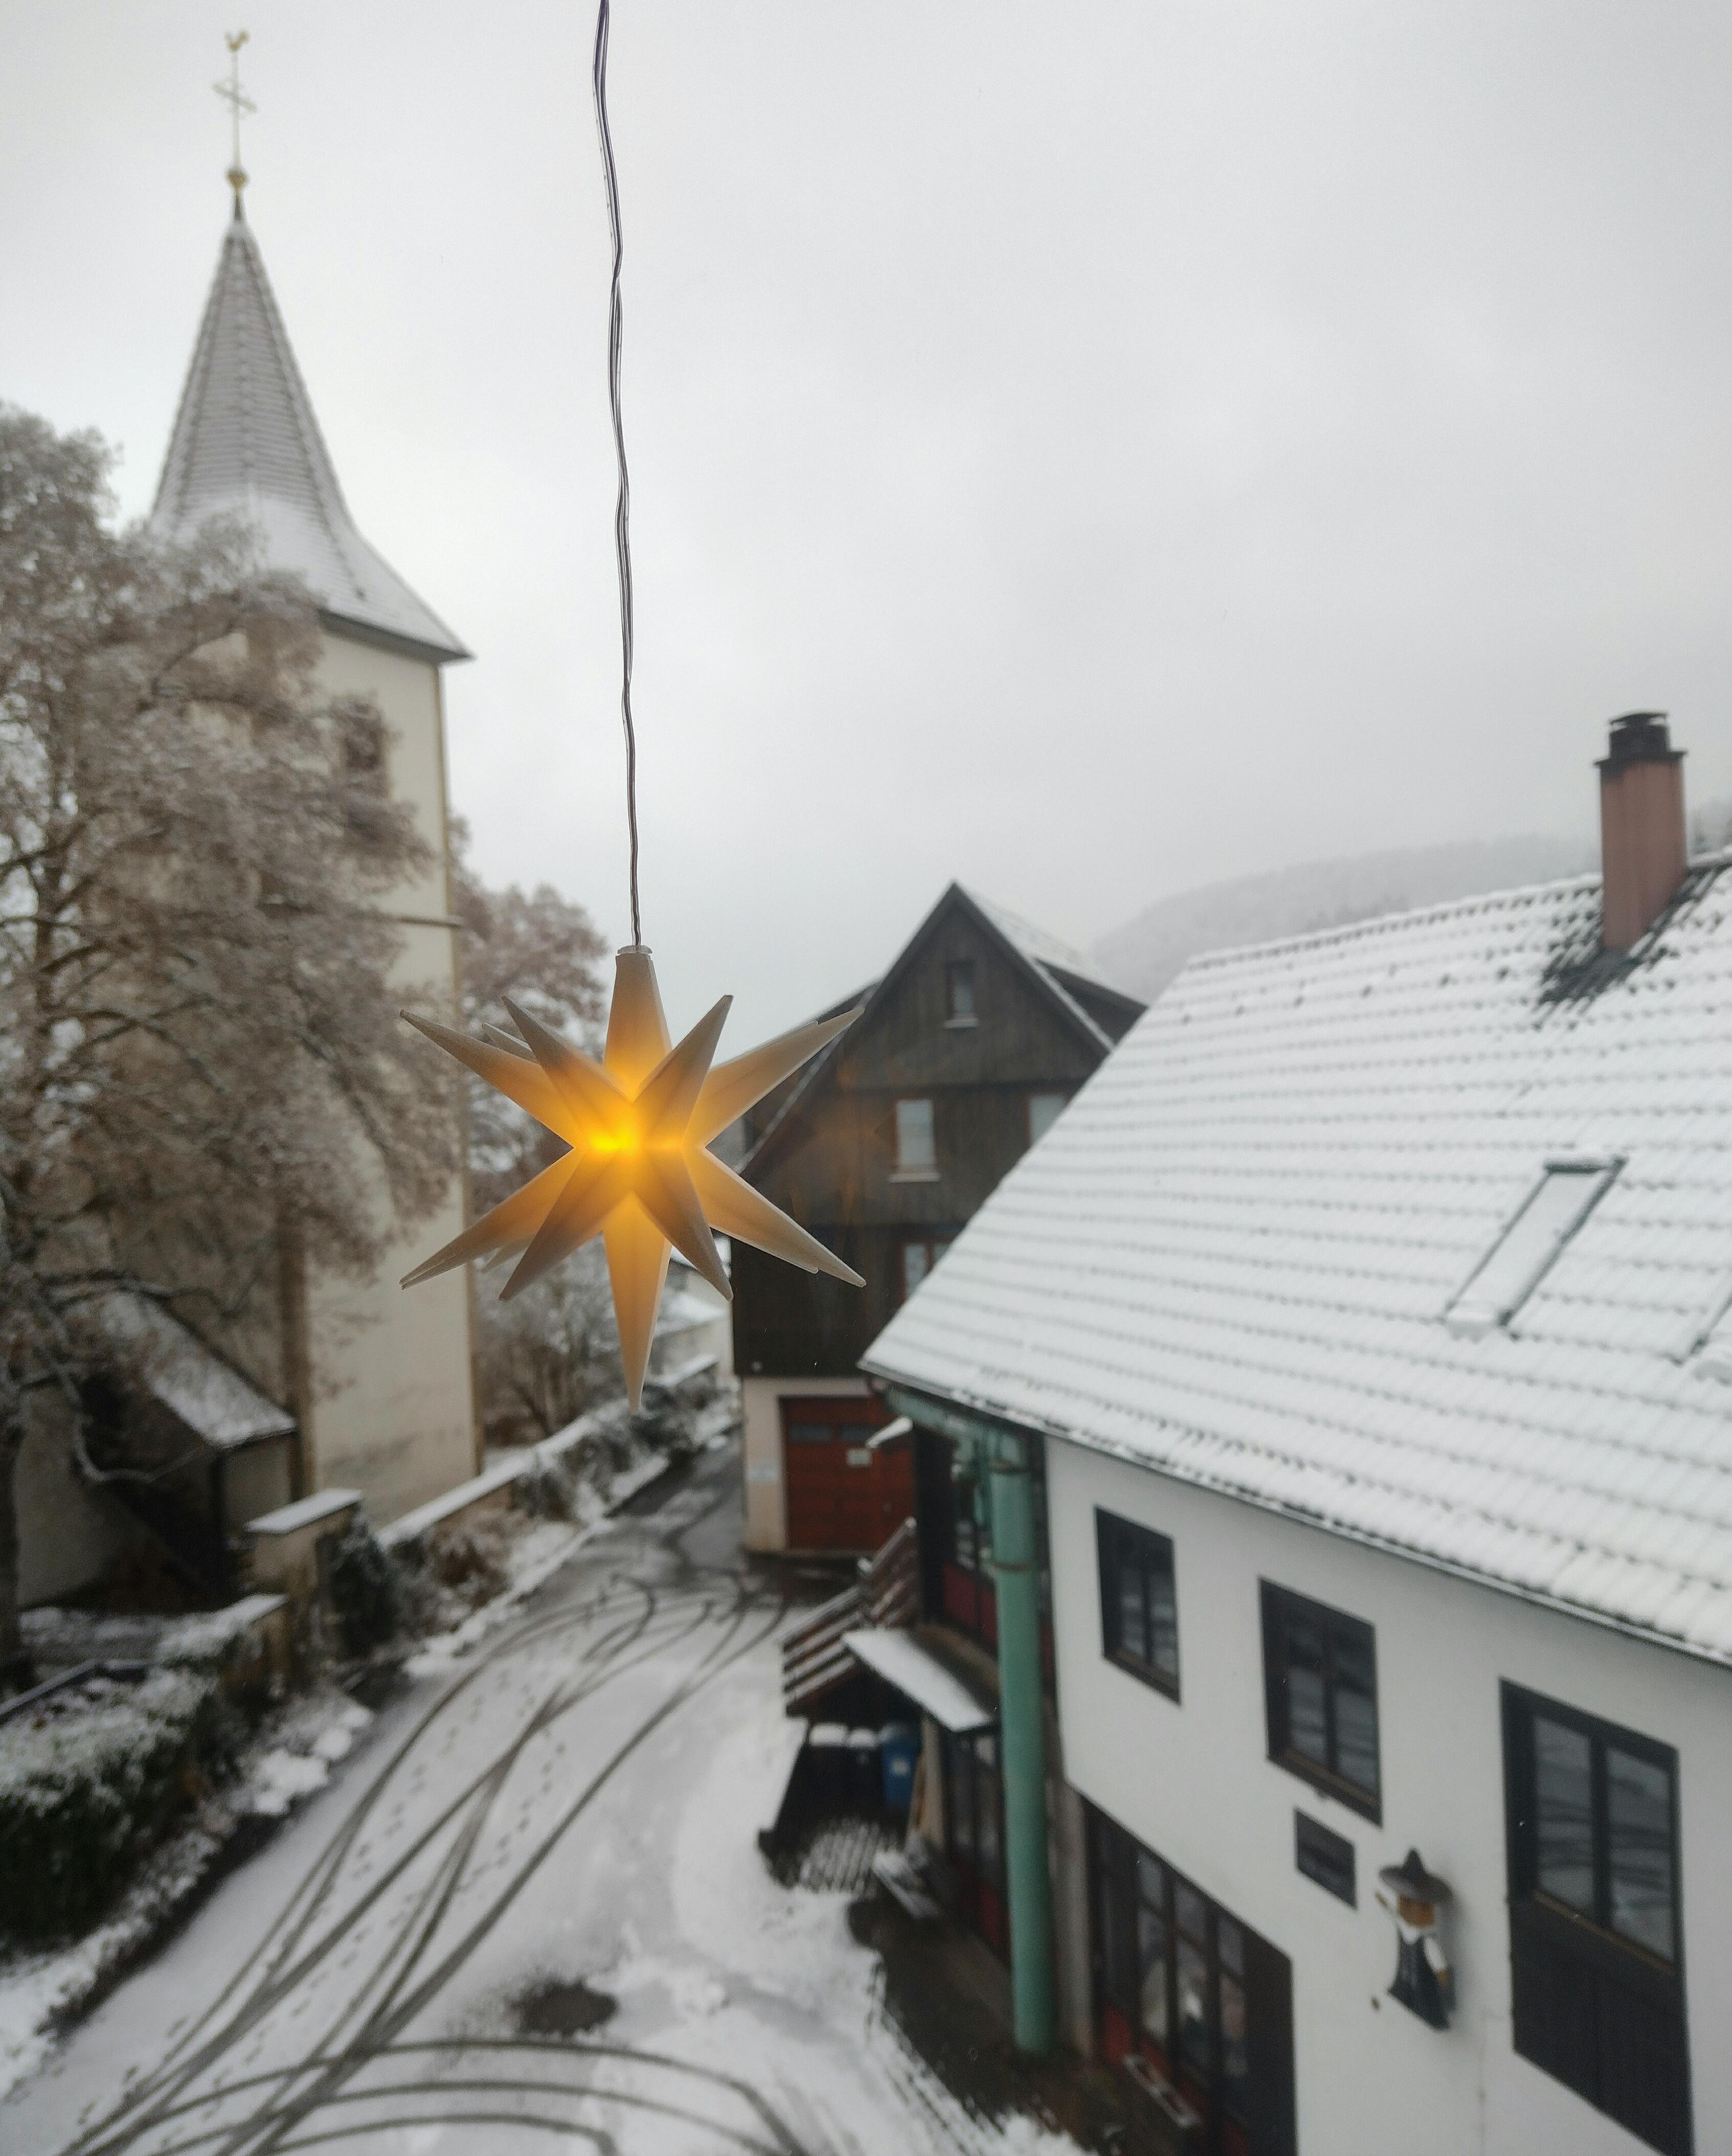 Guten morgen, ihr Lieben 🤍❄️
#schnee #winter #ausblick #neckartal #kirche #stern #winterliebe #nebel